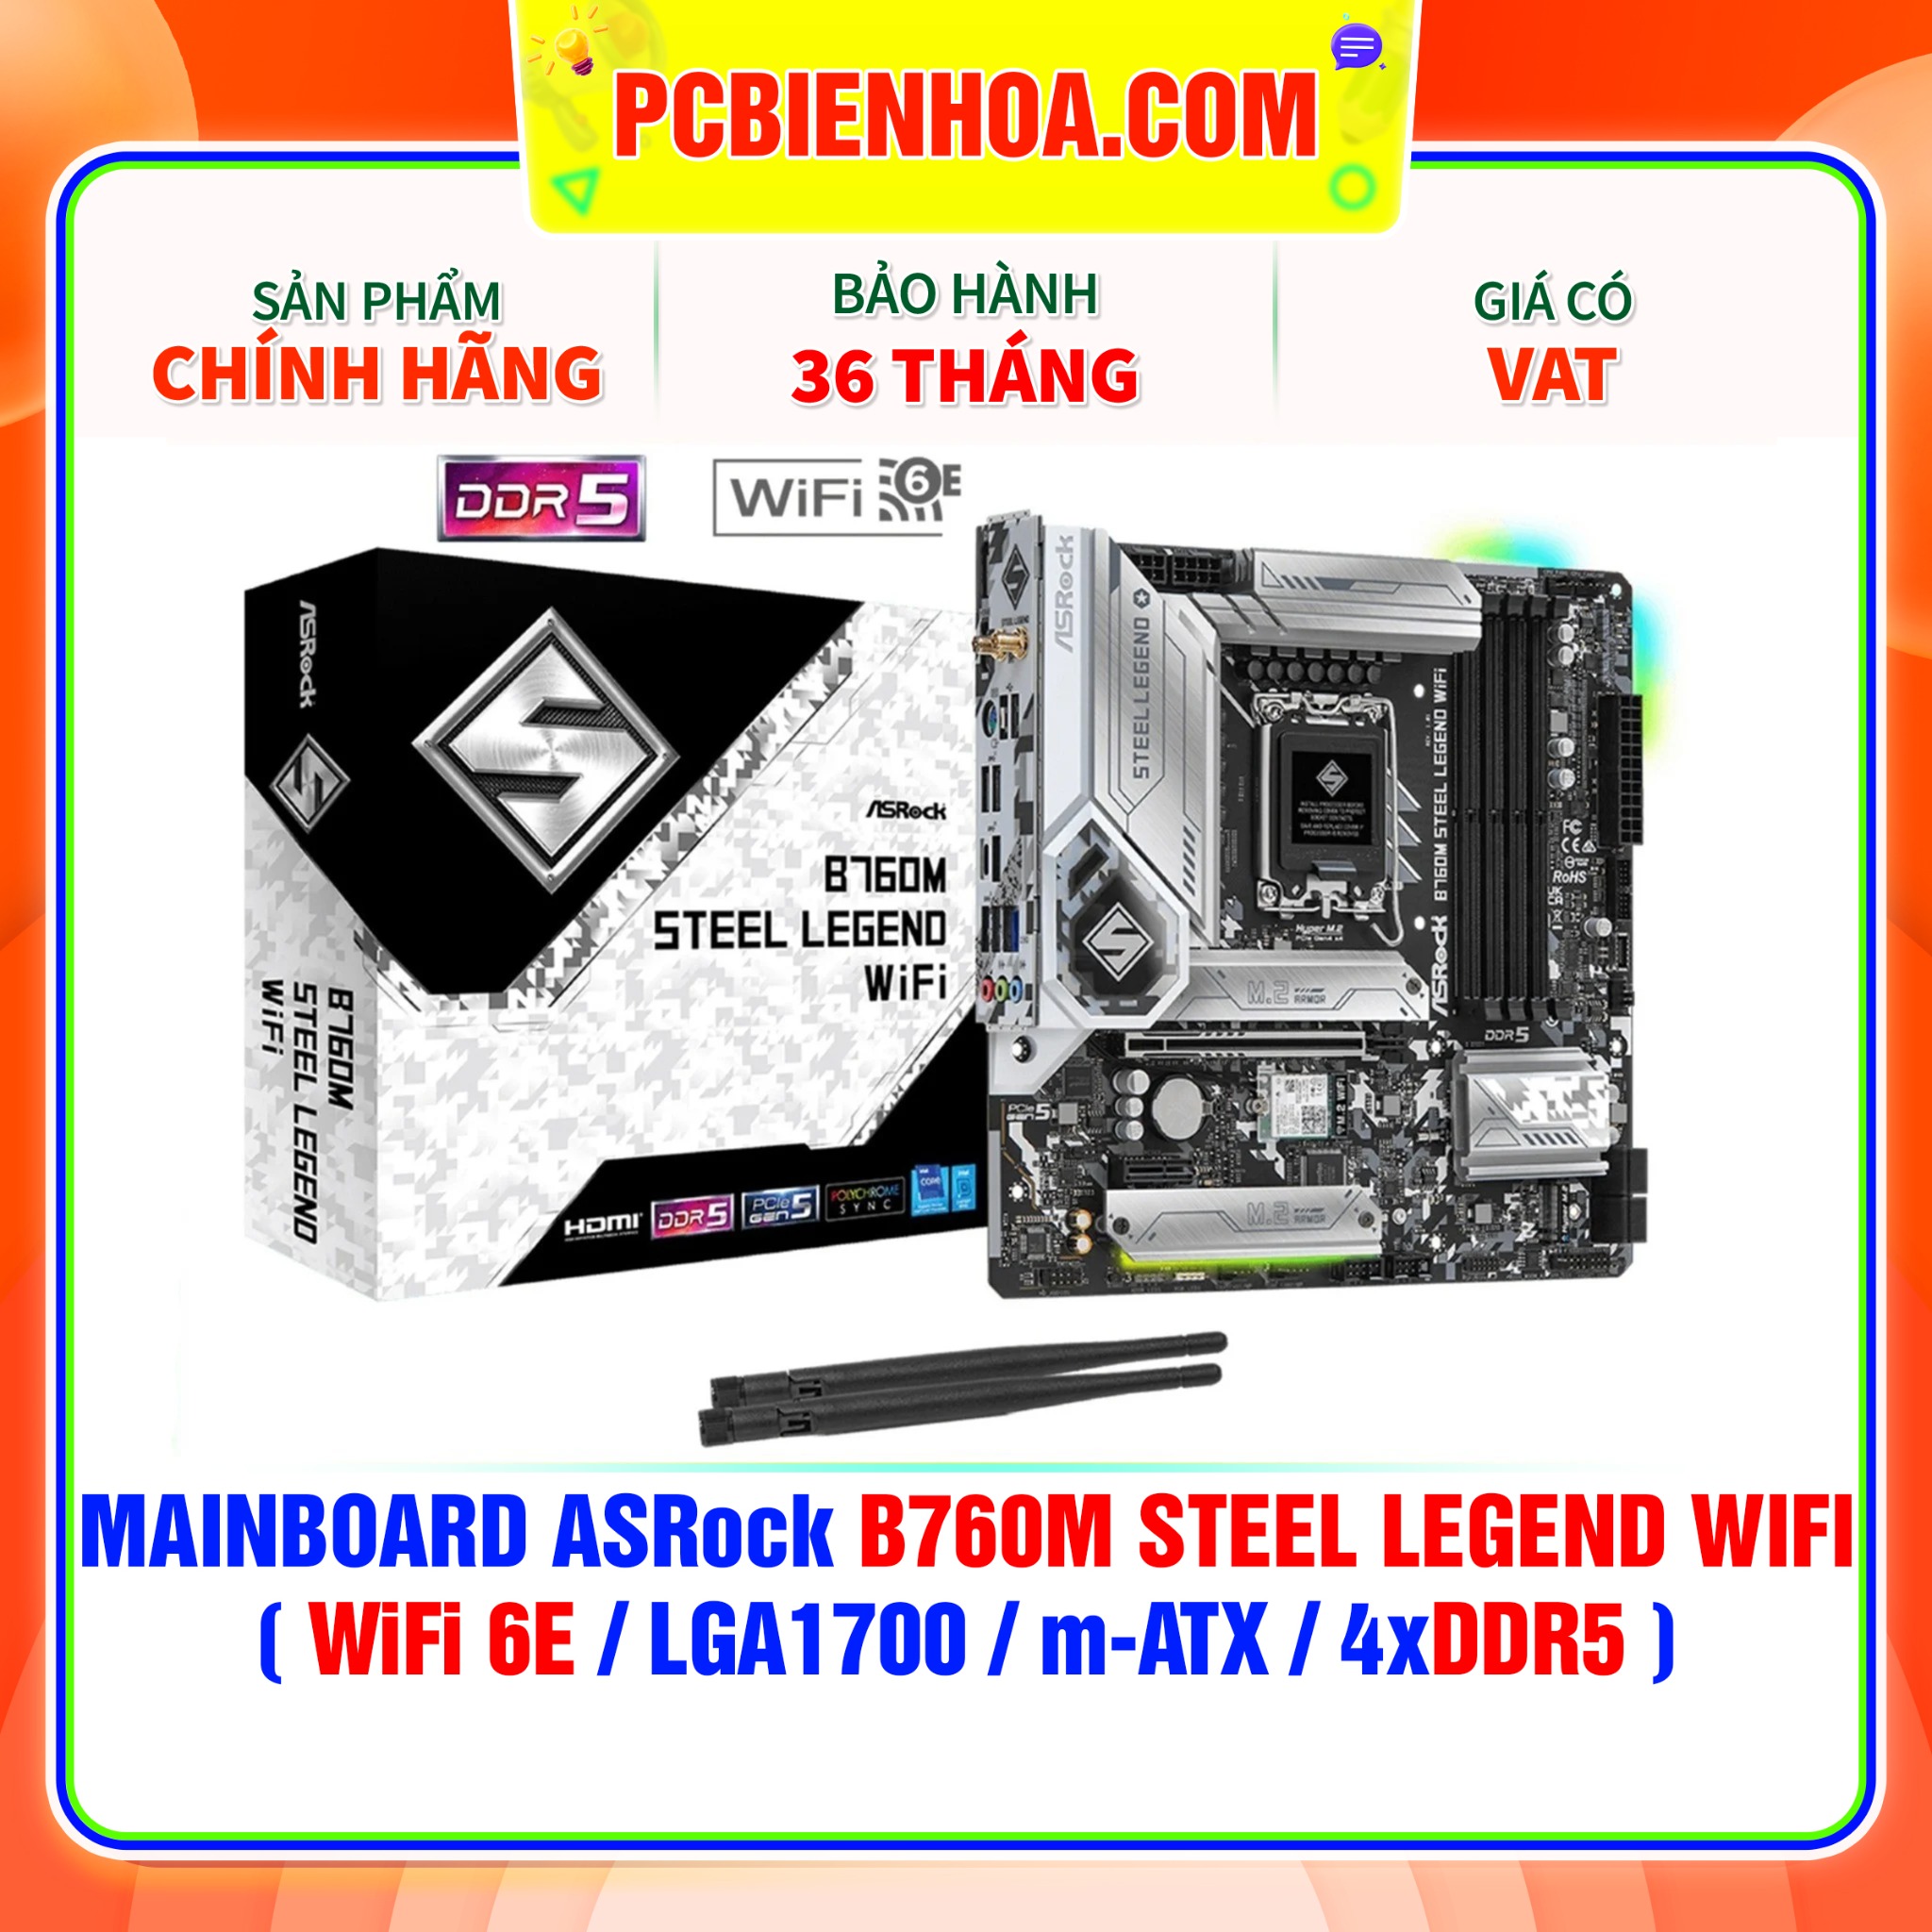 MAINBOARD ASRock B760M STEEL LEGEND WIFI  WiFi 6E LGA1700 m-ATX 4xDDR5